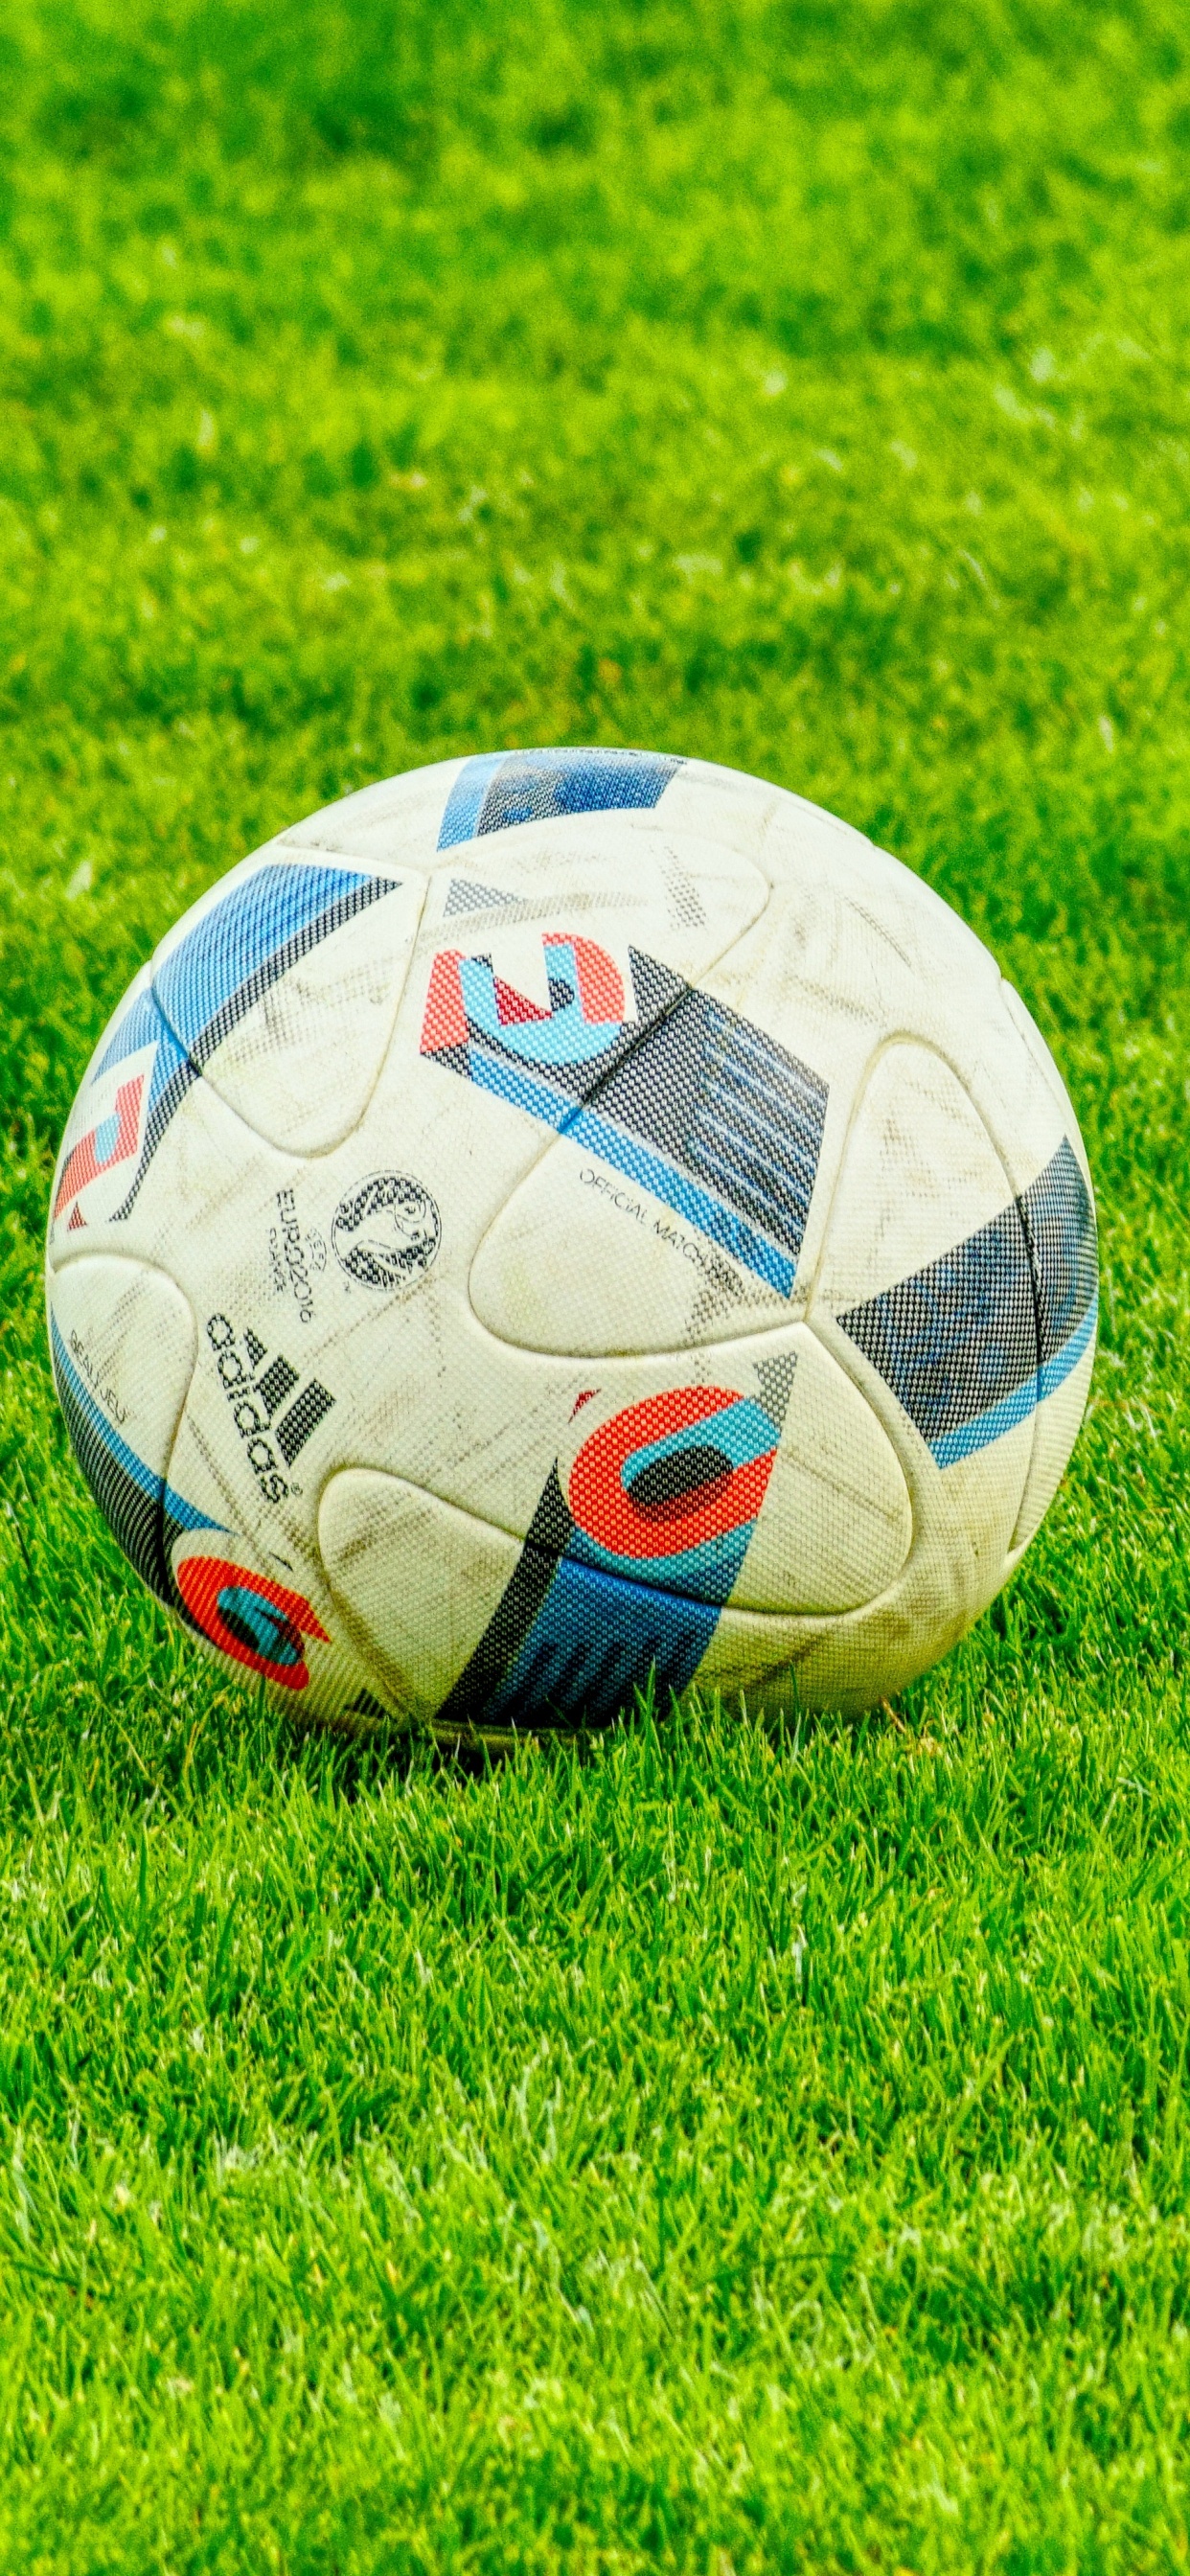 足球, 球, 草, 国际足球的规则, 气球 壁纸 1242x2688 允许